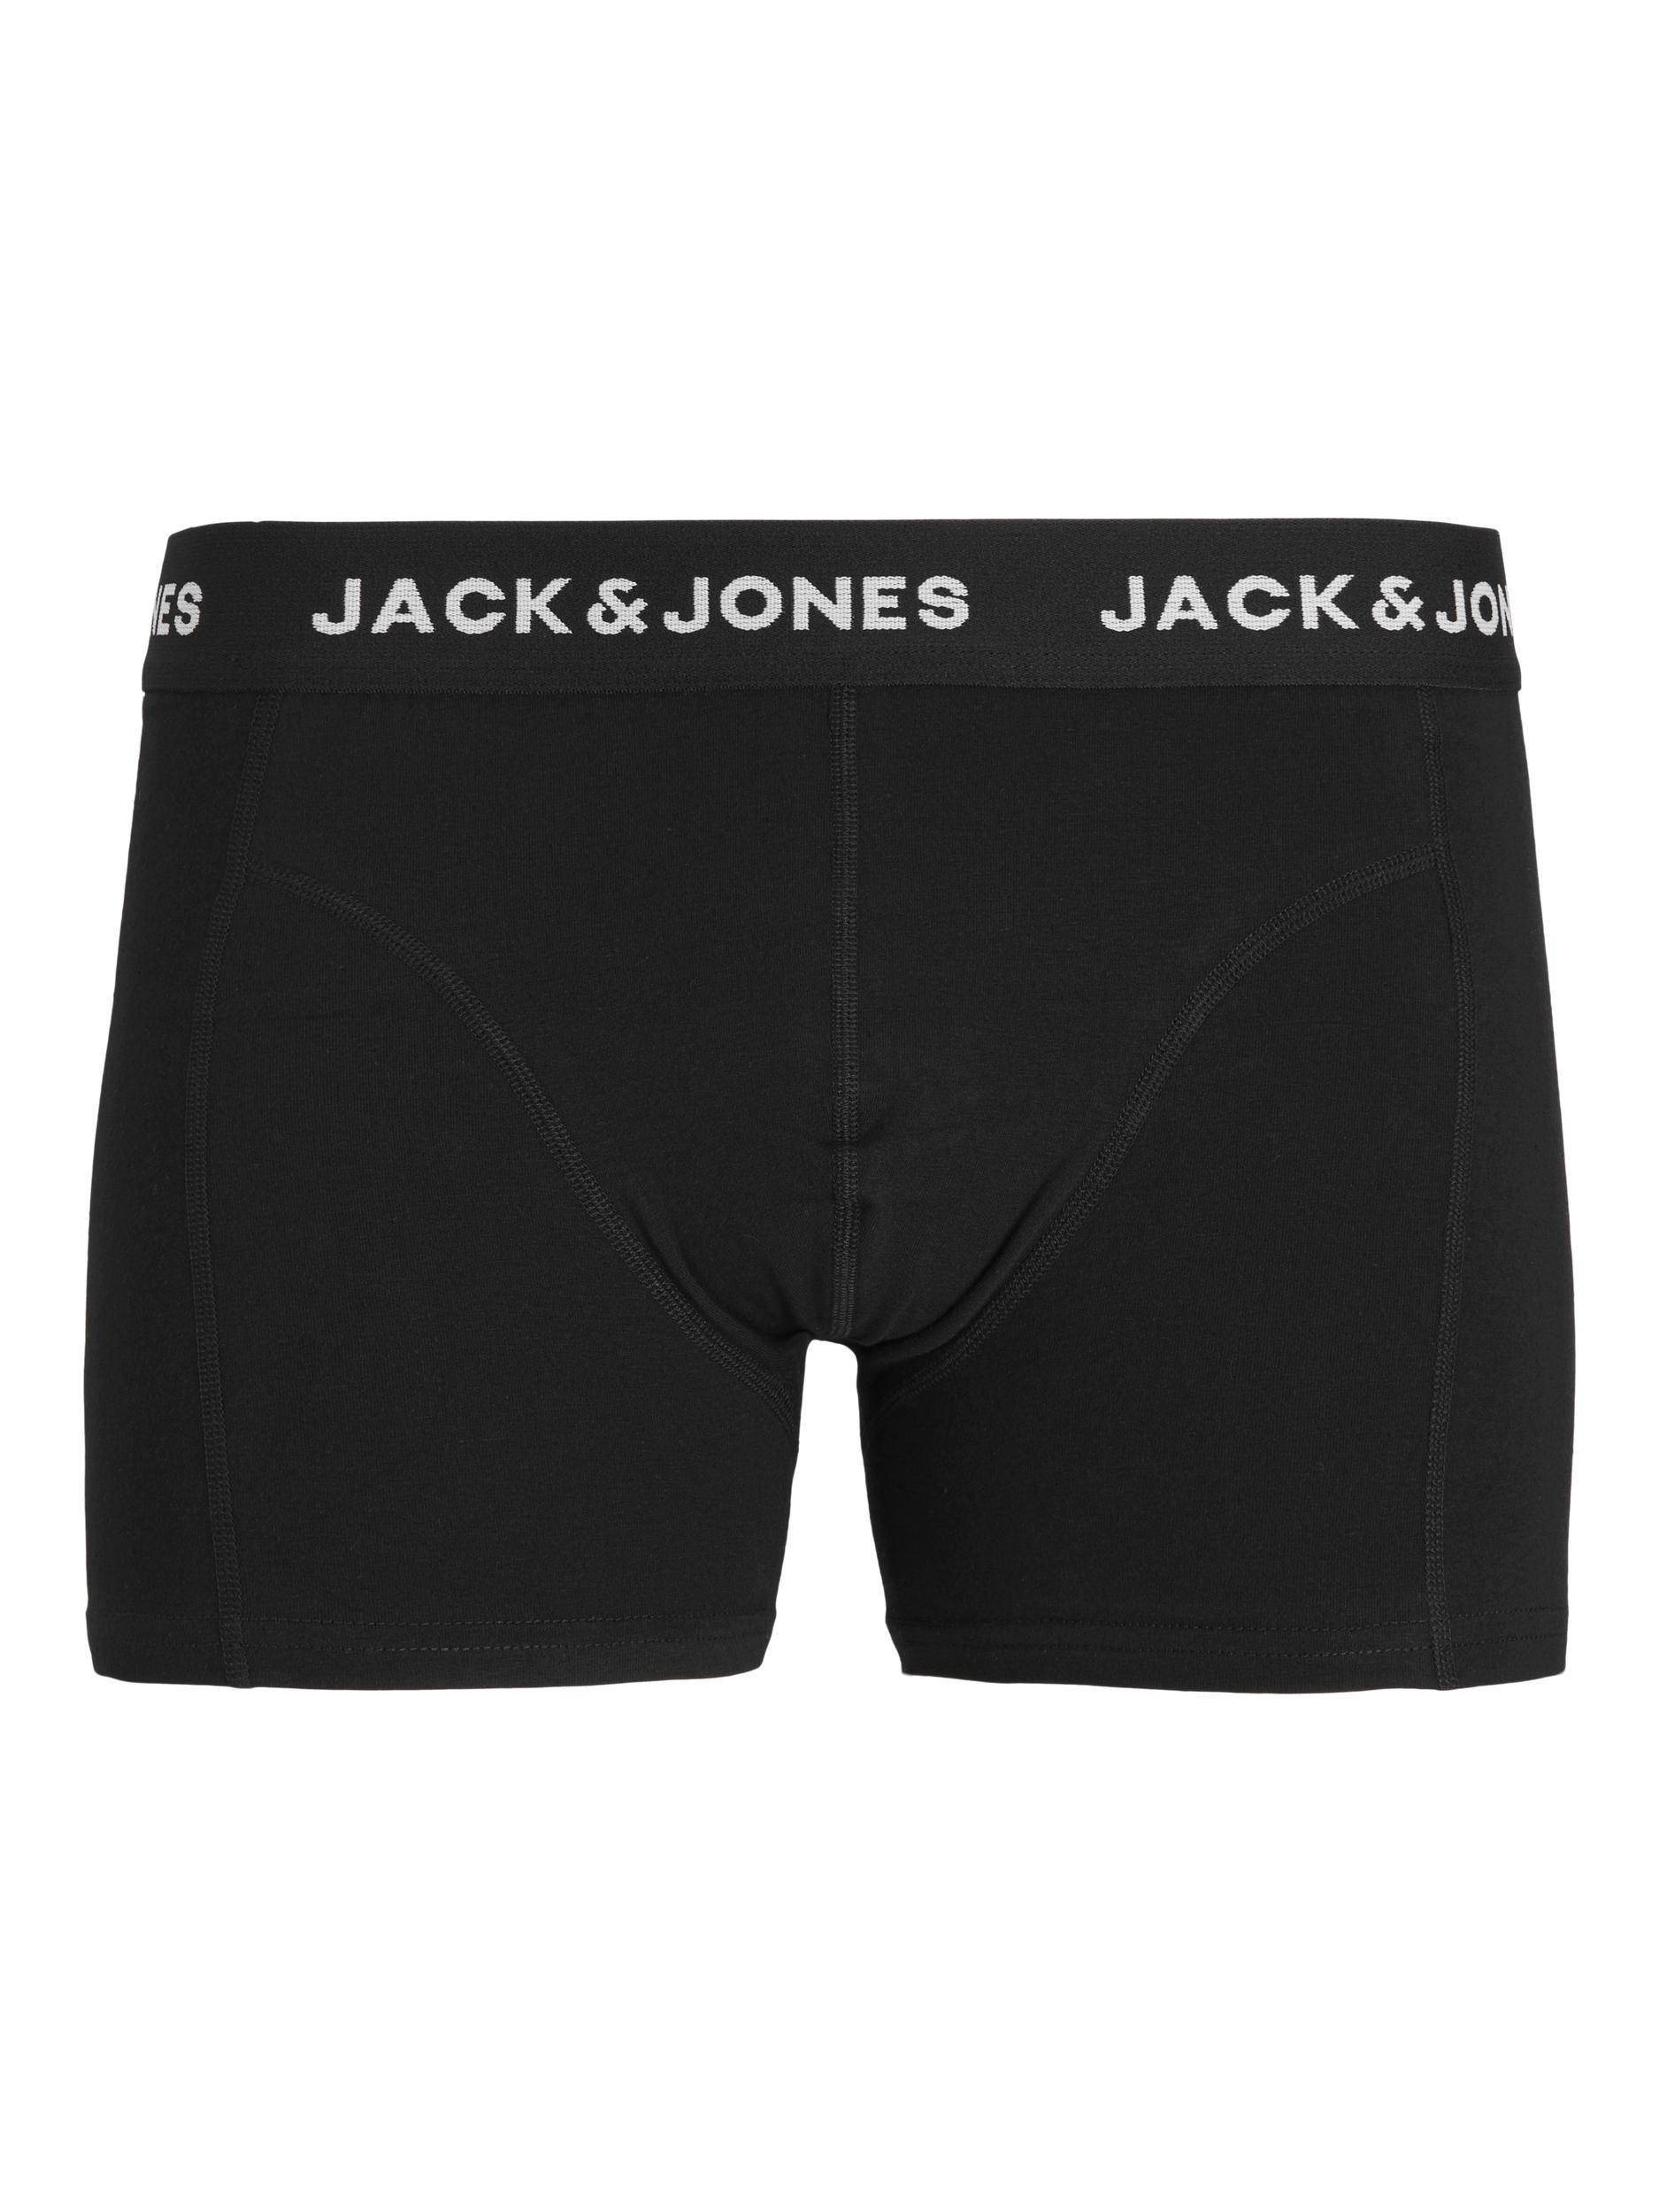 Afbeelding van Jack & Jones Jacartin logo trunk